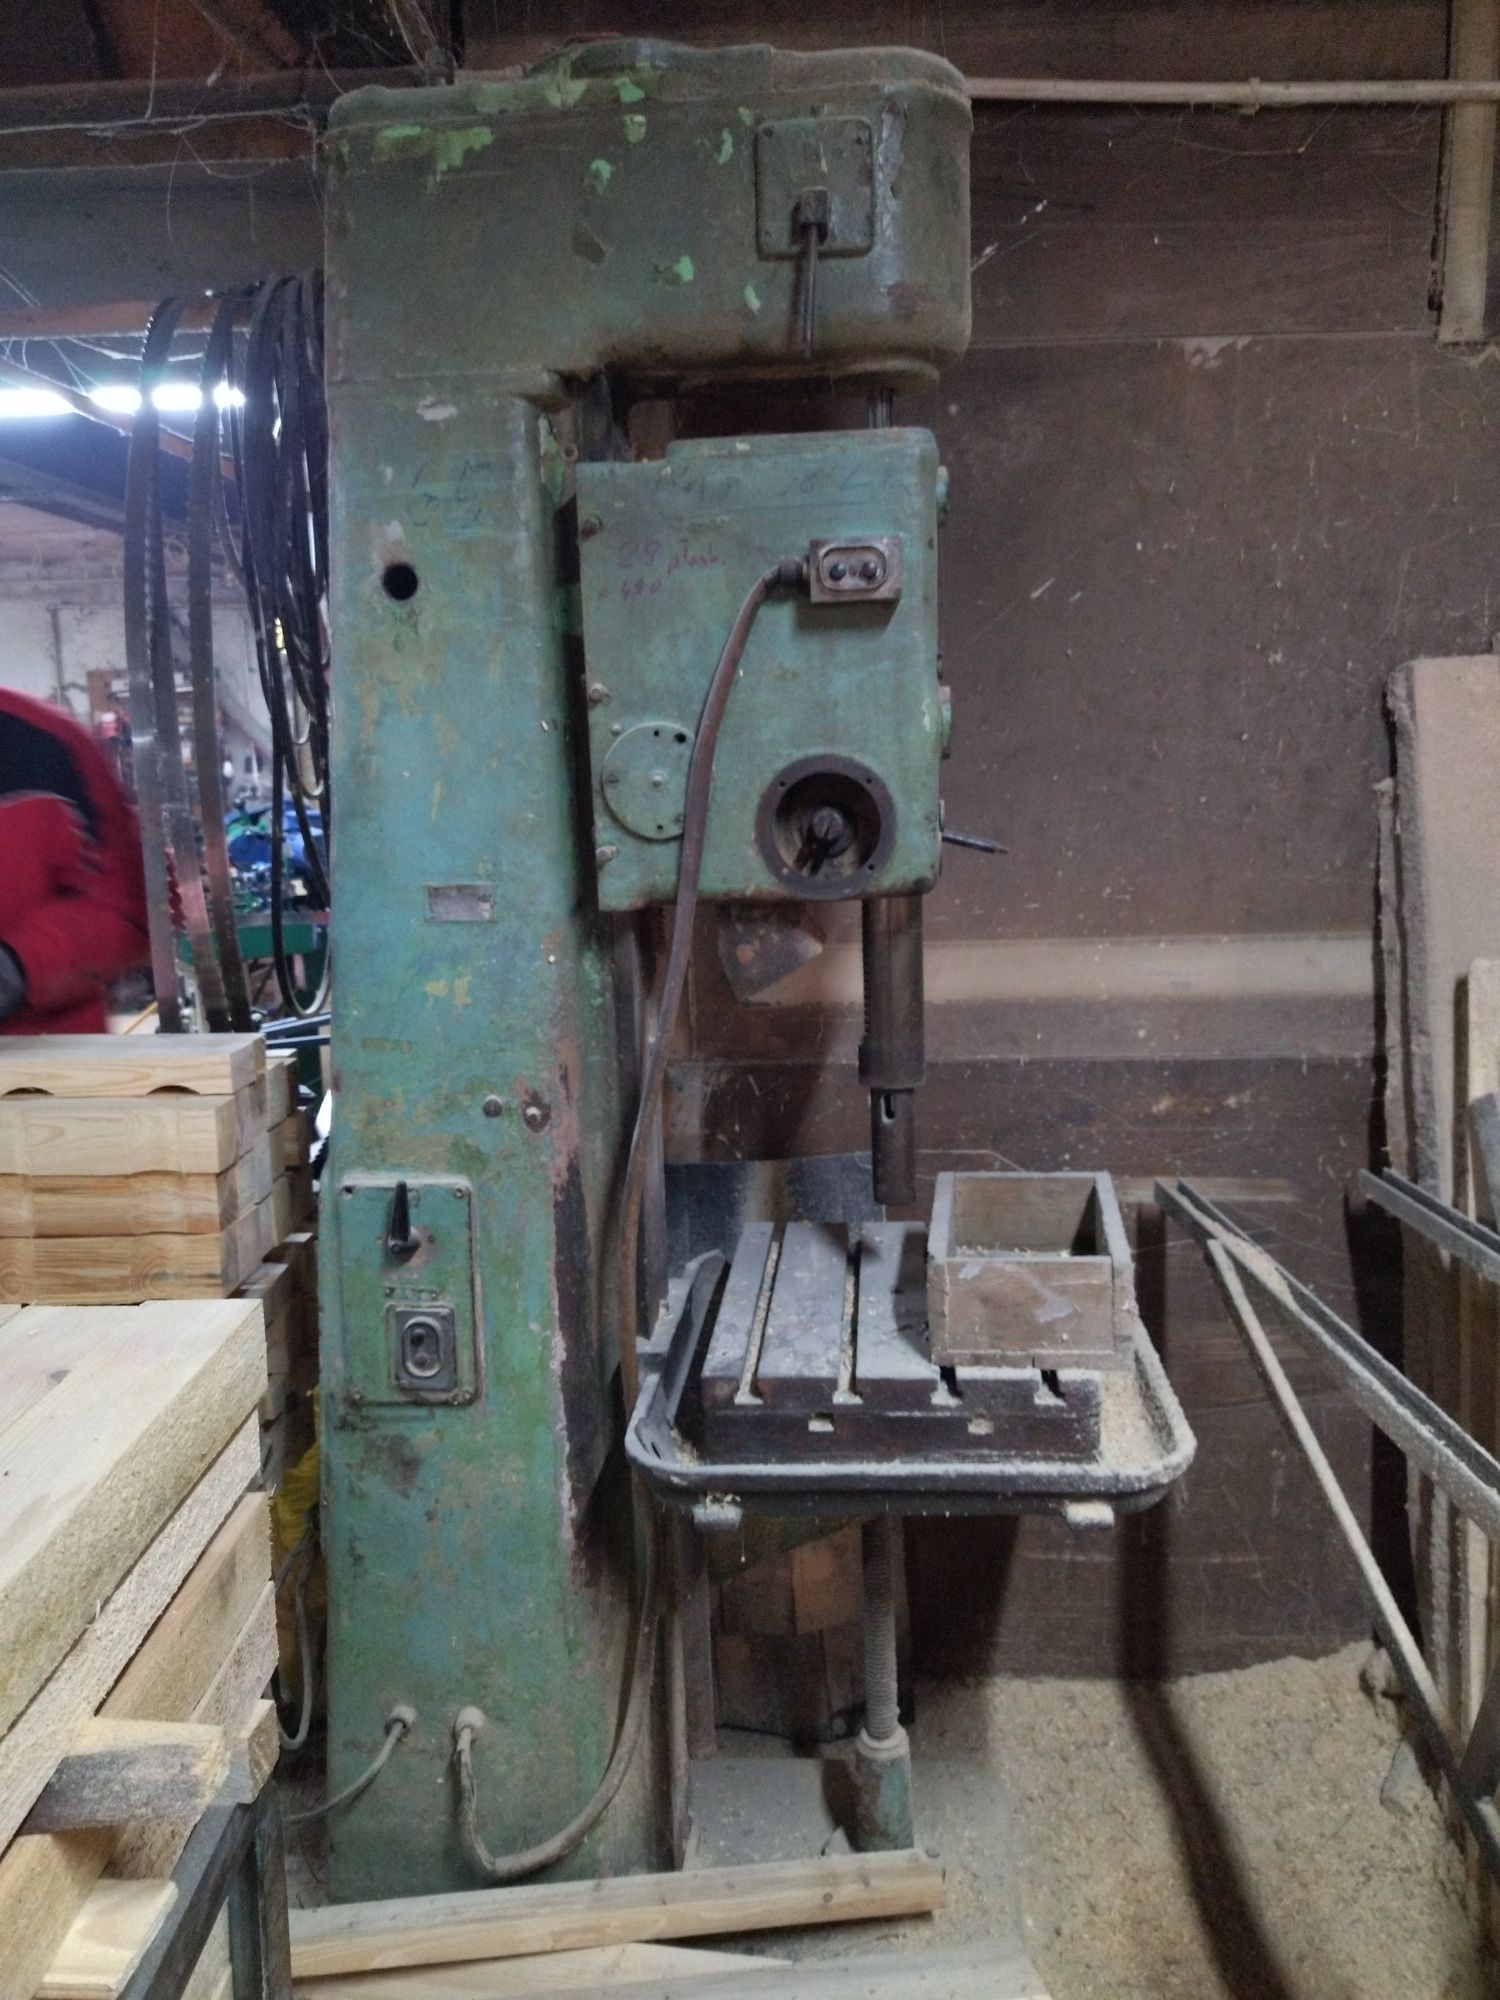 Wiertarka WK25 duża porządna maszyna stolarska , tokarskie